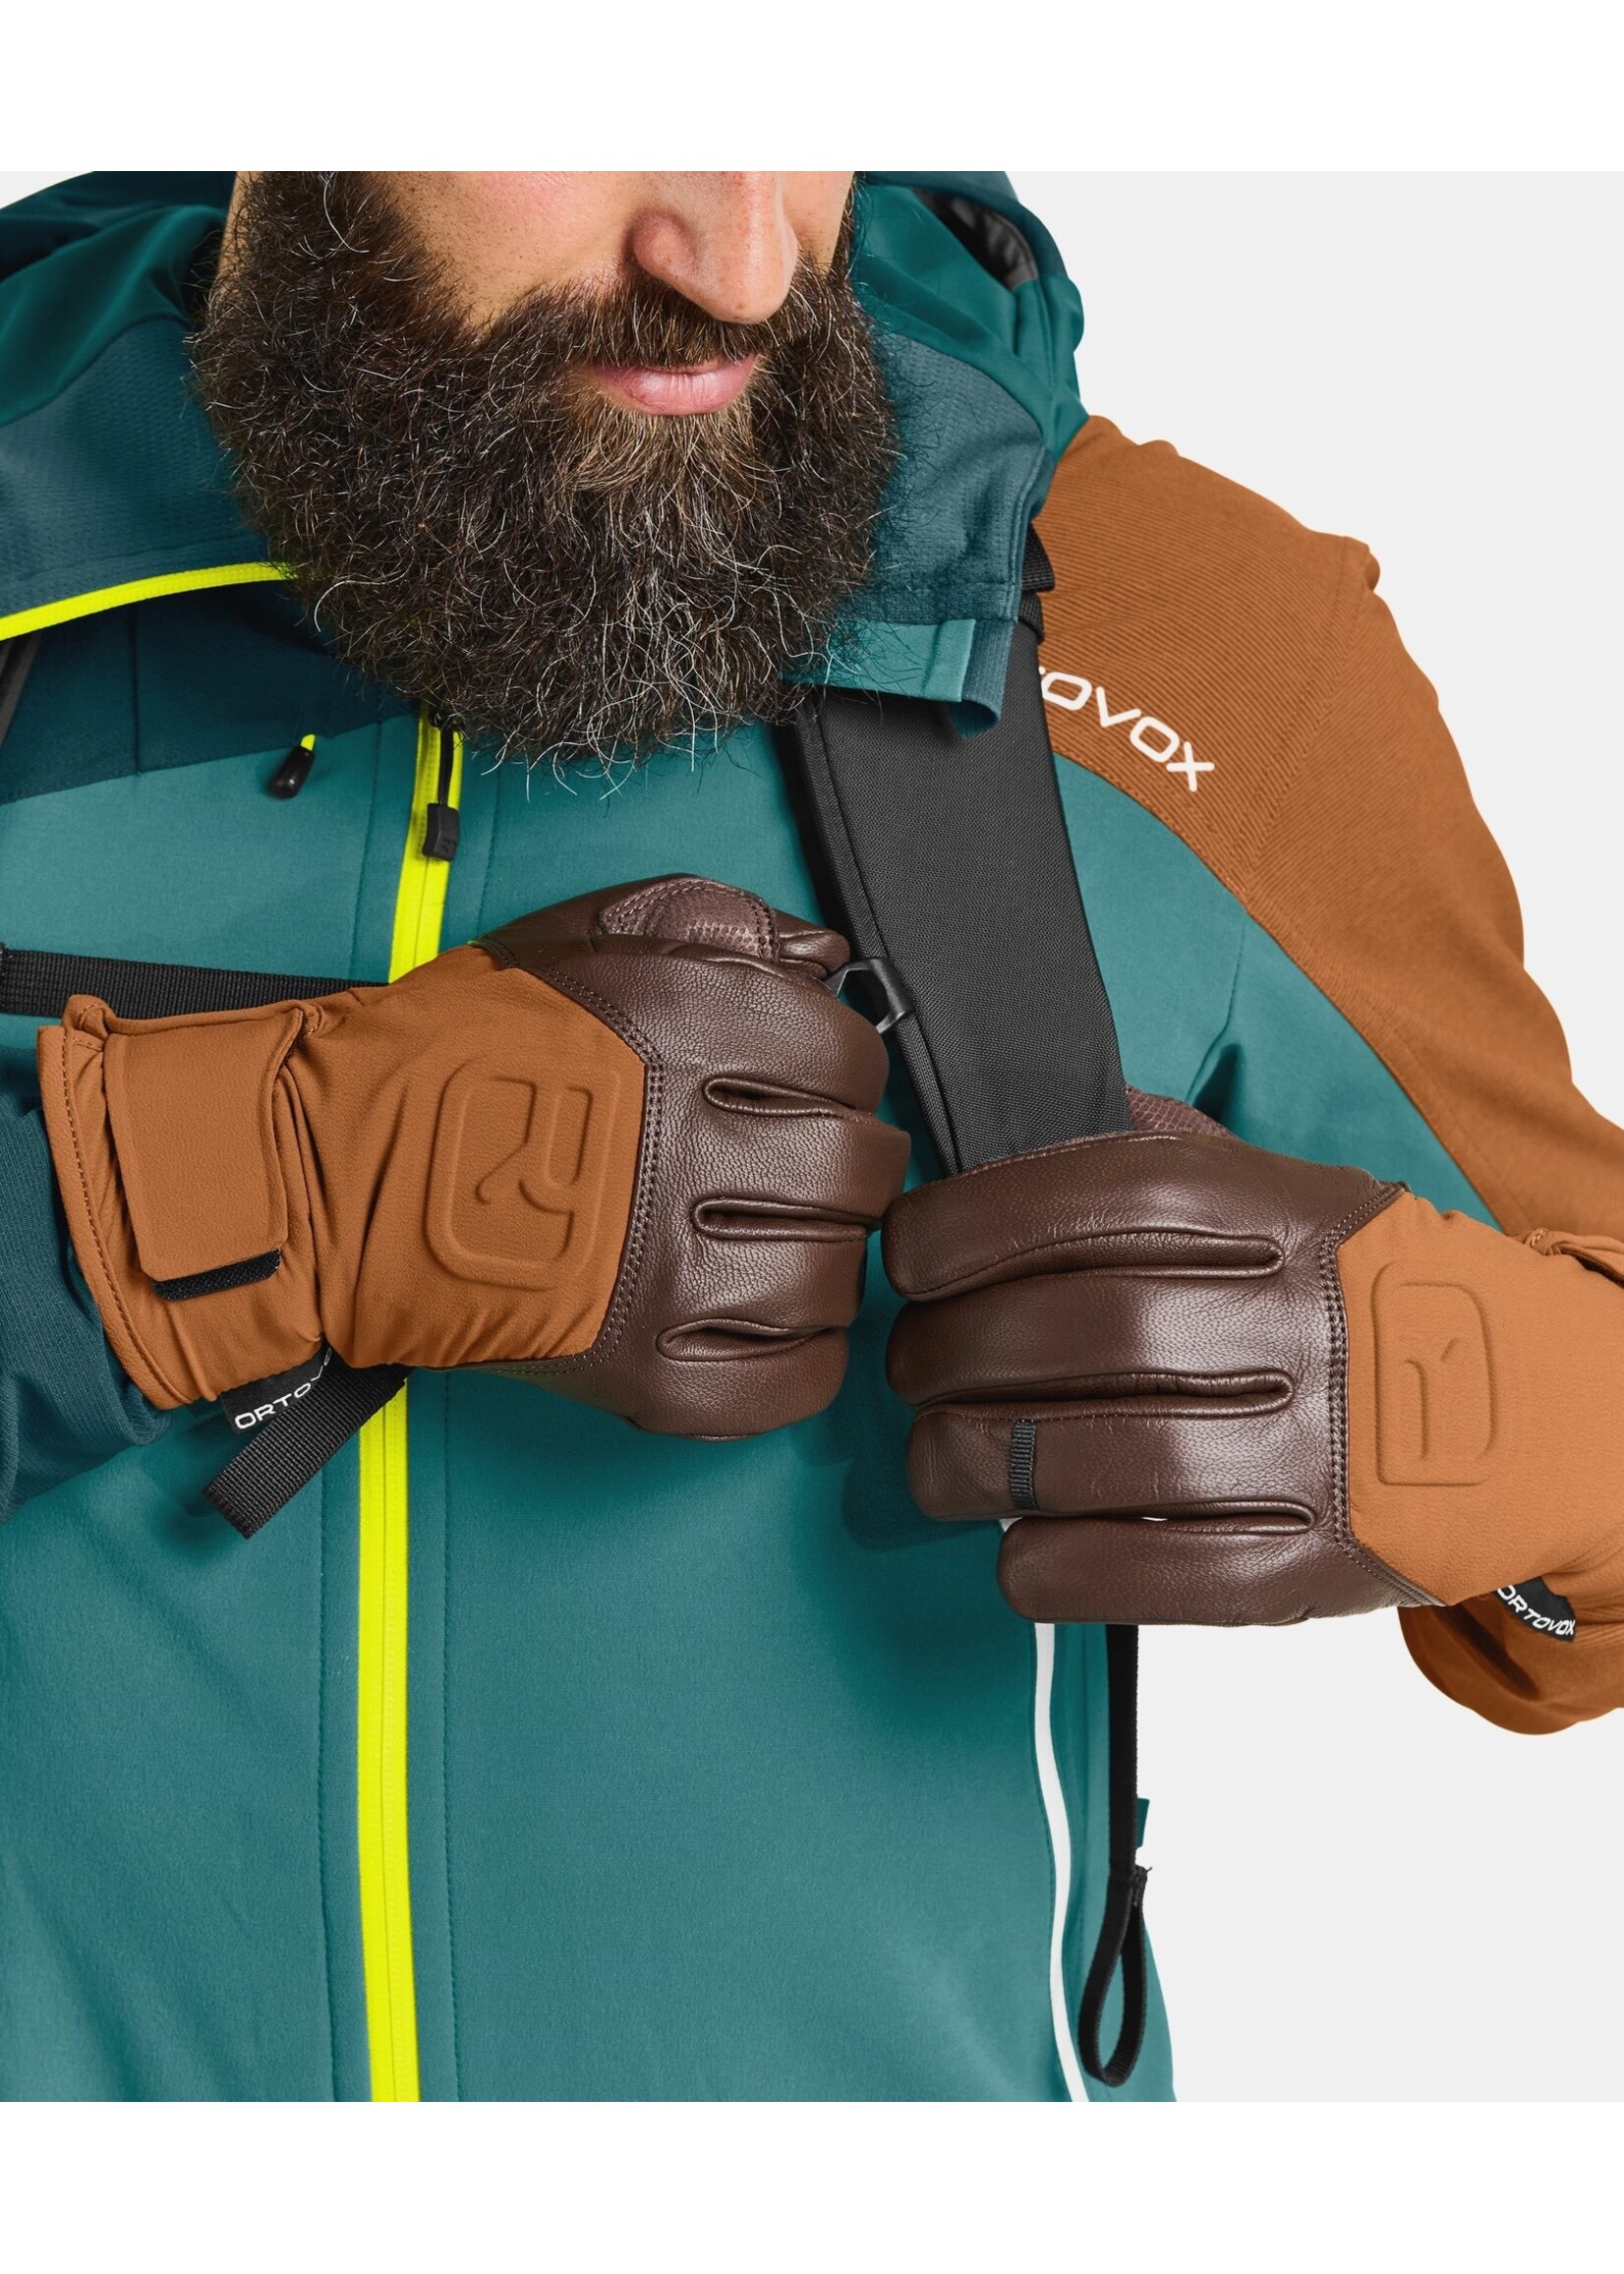 Ortovox Ortovox Alpine Pro Glove - Men